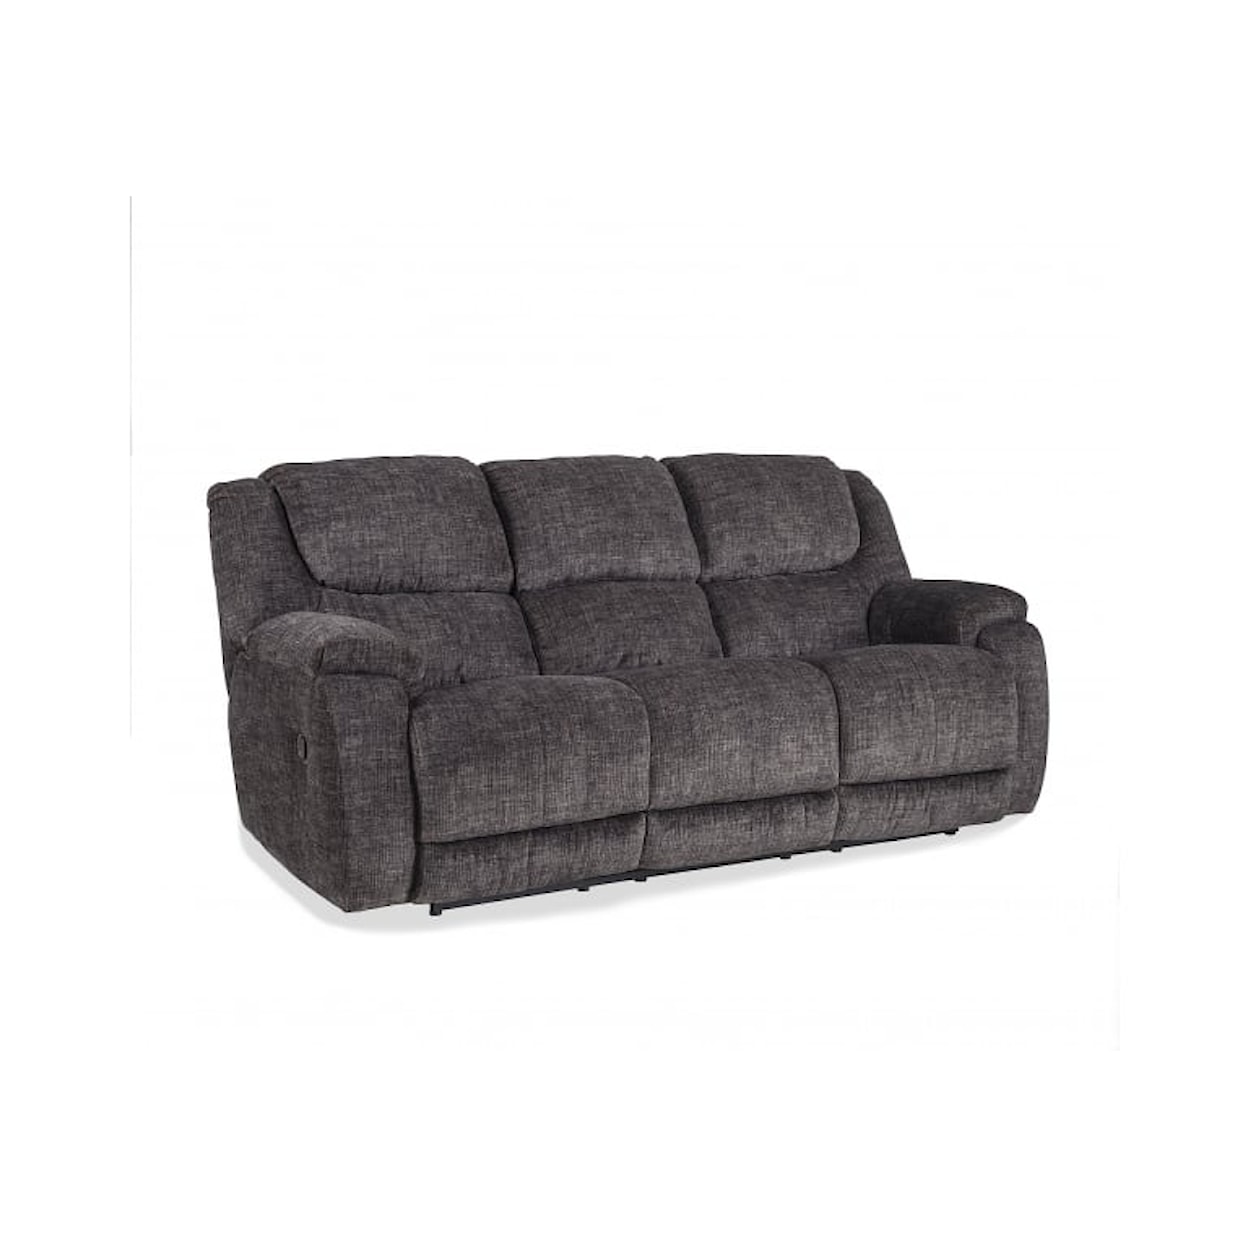 HomeStretch 206 Reclining Sofa